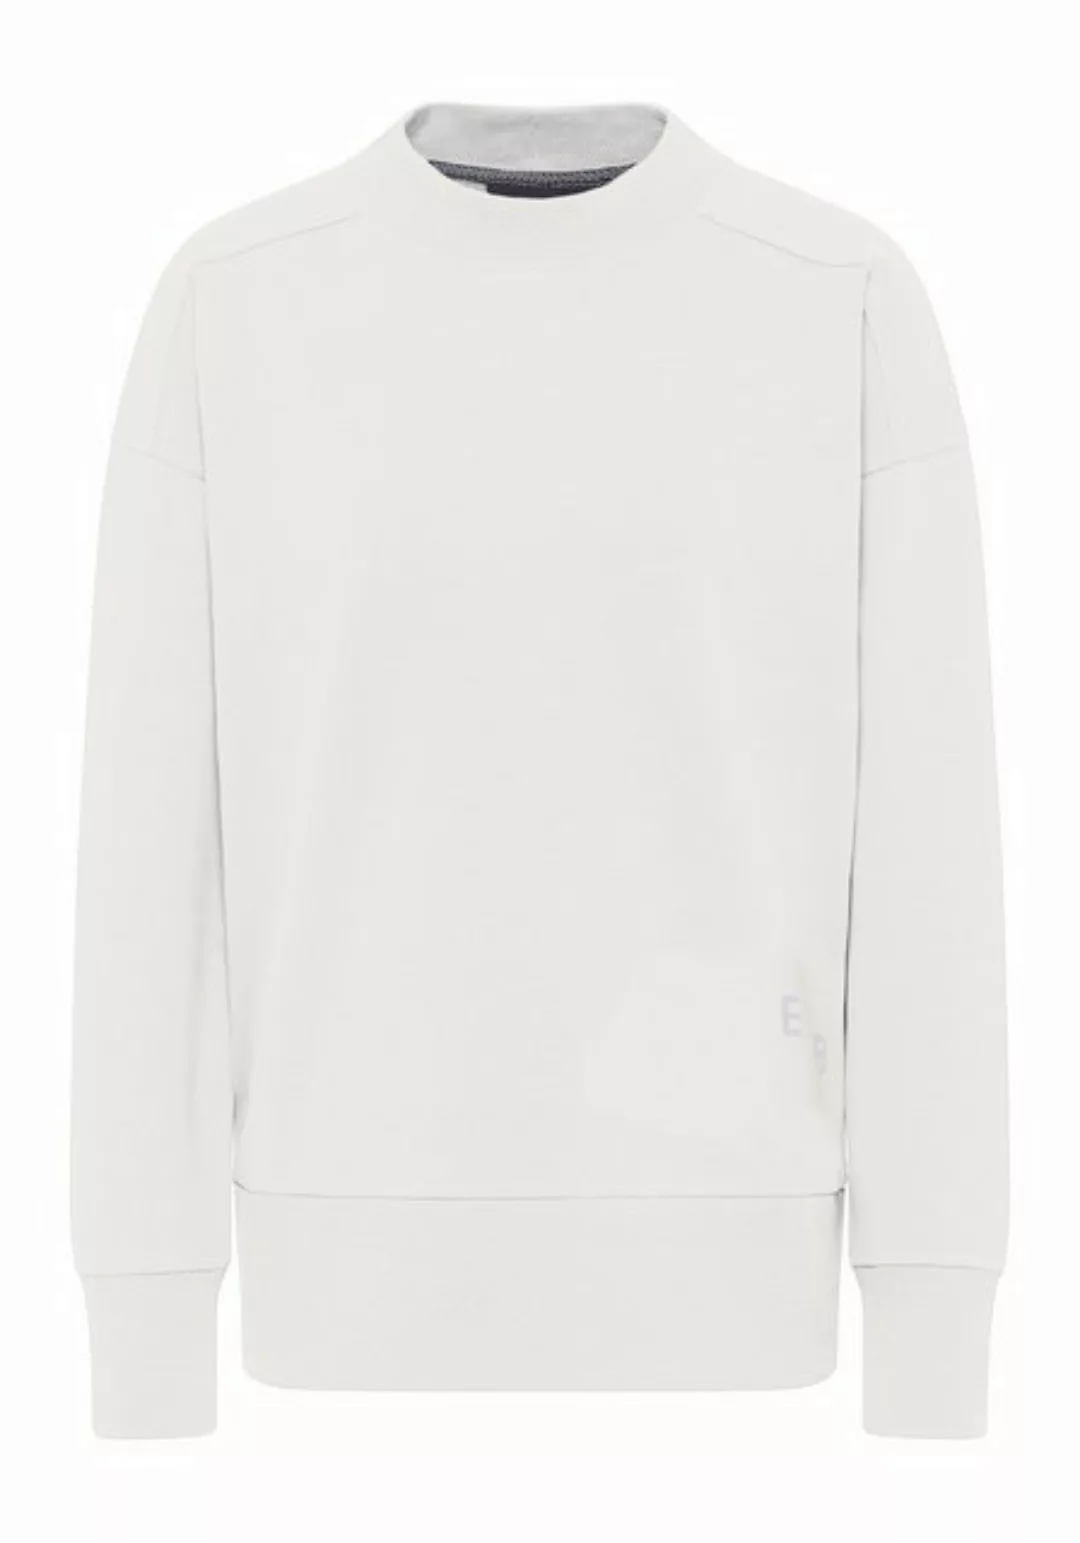 Elbsand Sweater günstig online kaufen